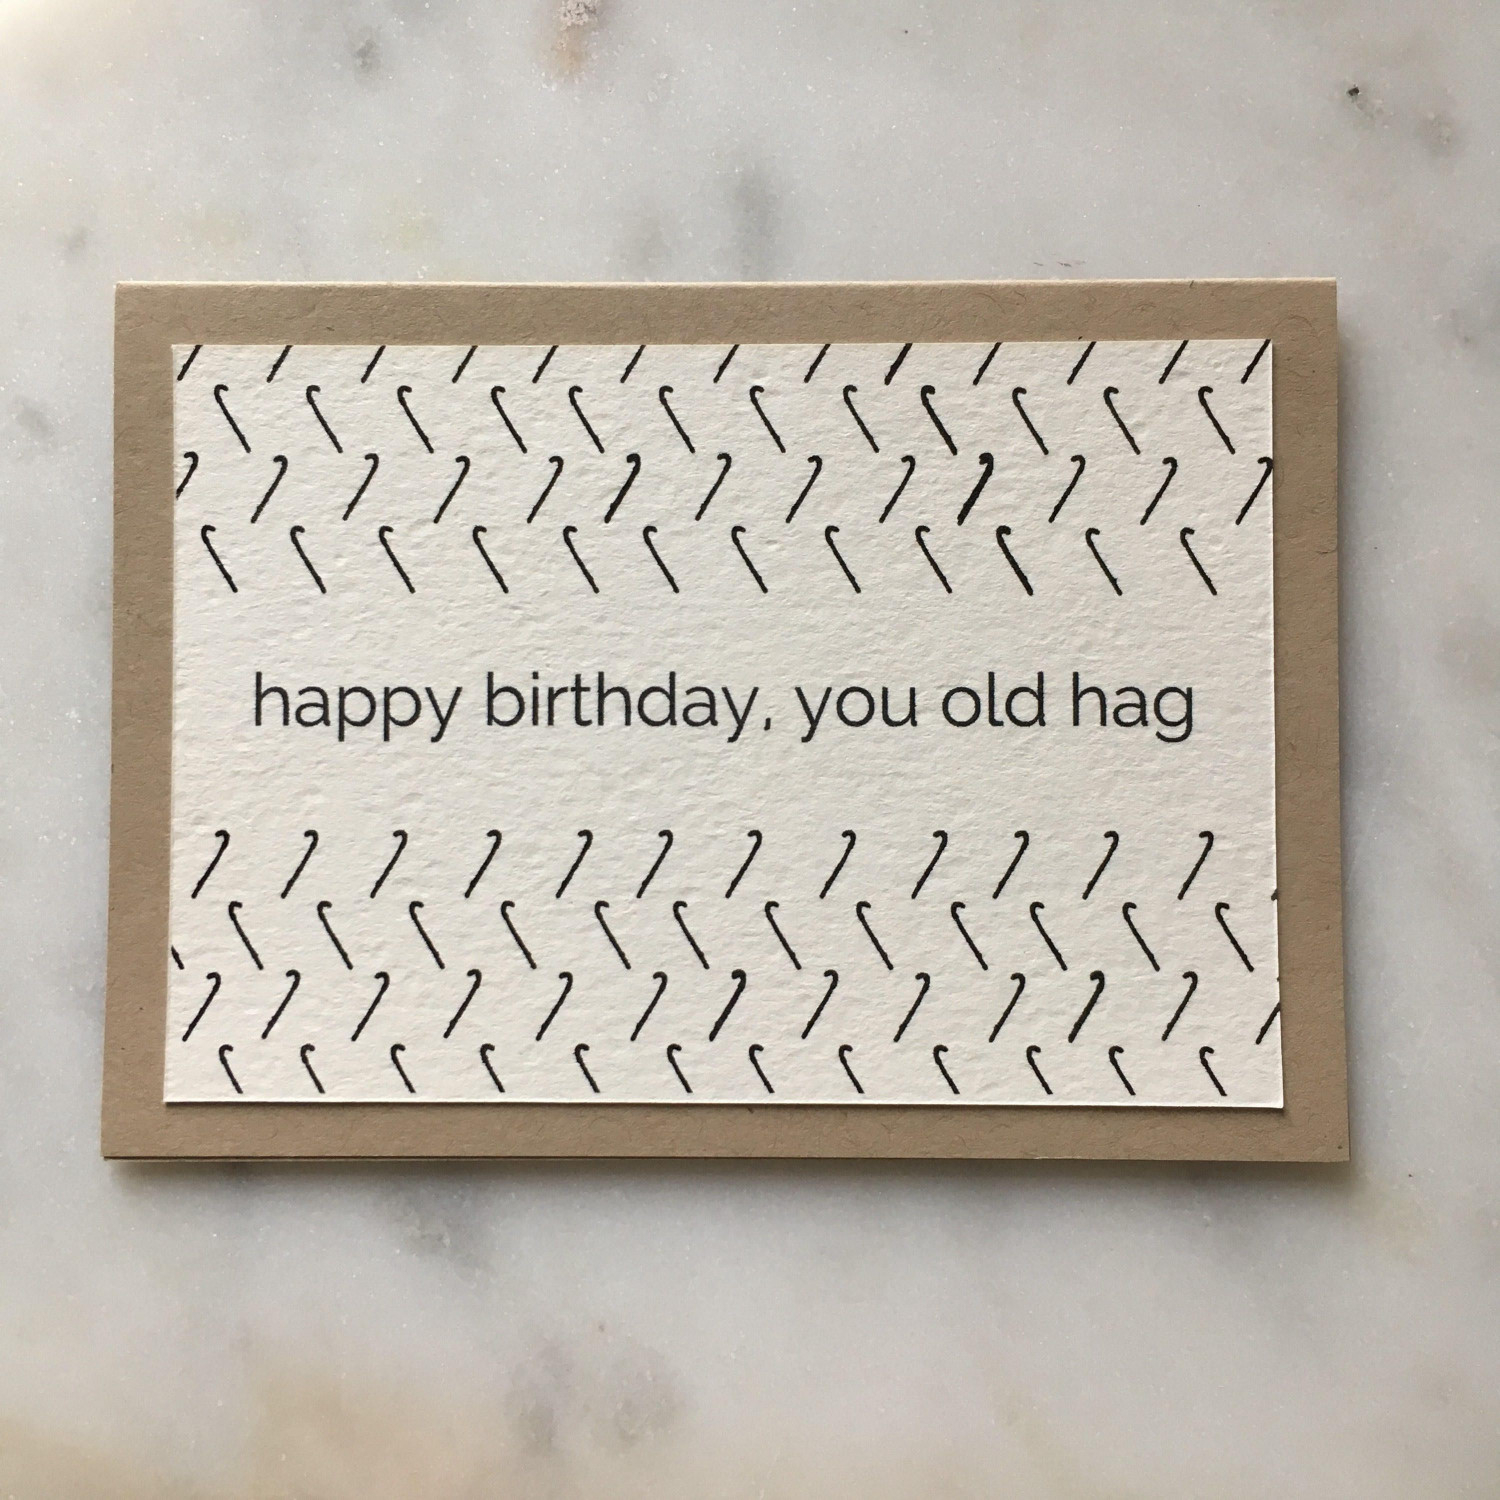 Happy Birthday Card Ideas For Friends Birthday Gifts For Friends Inspirational Happy Birthday You Old Hag